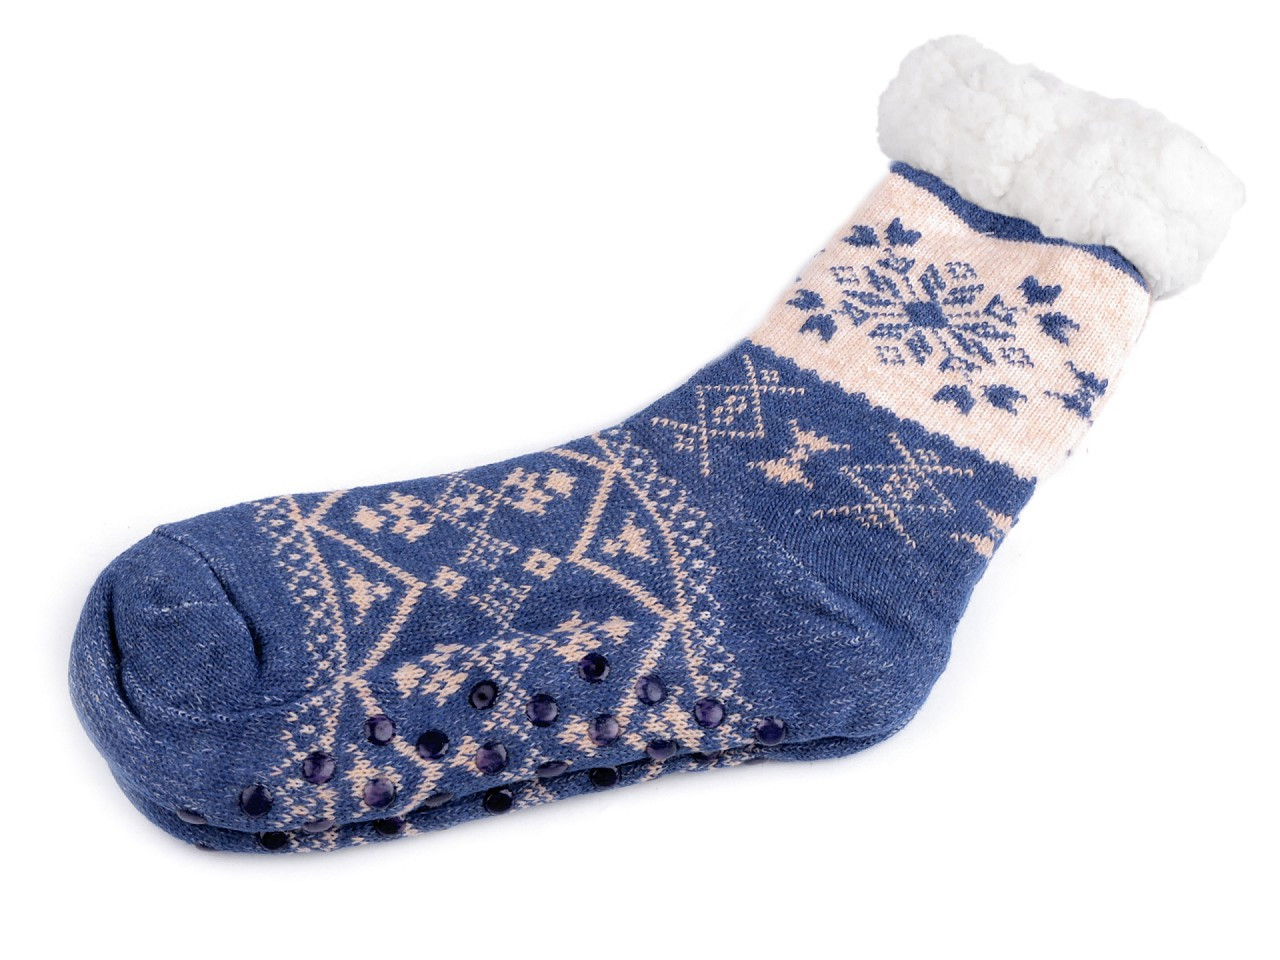 Ponožky zimní s kožíškem a protiskluzem, unisex, barva 17 (vel. 35-38) modrá